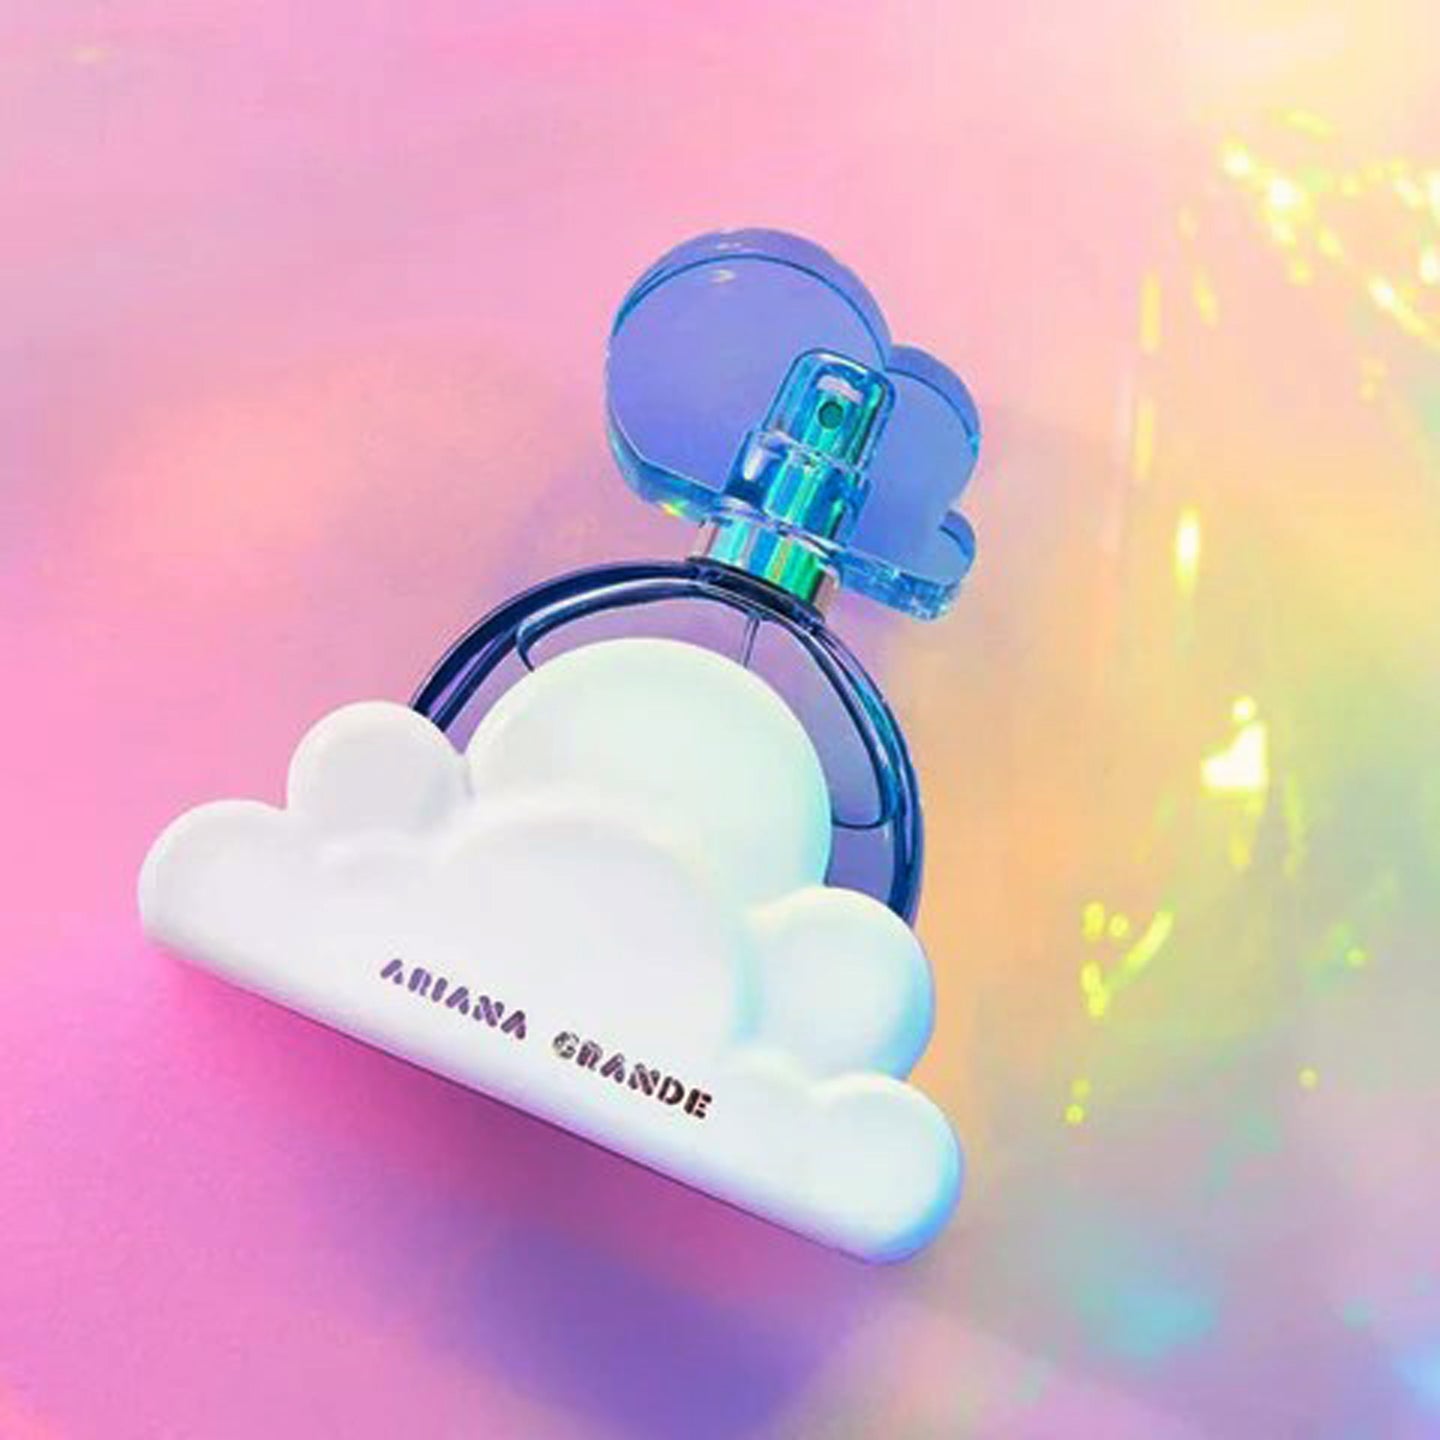 Ariana Grande Cloud Eau de Parfum Spray 100 ml for Women